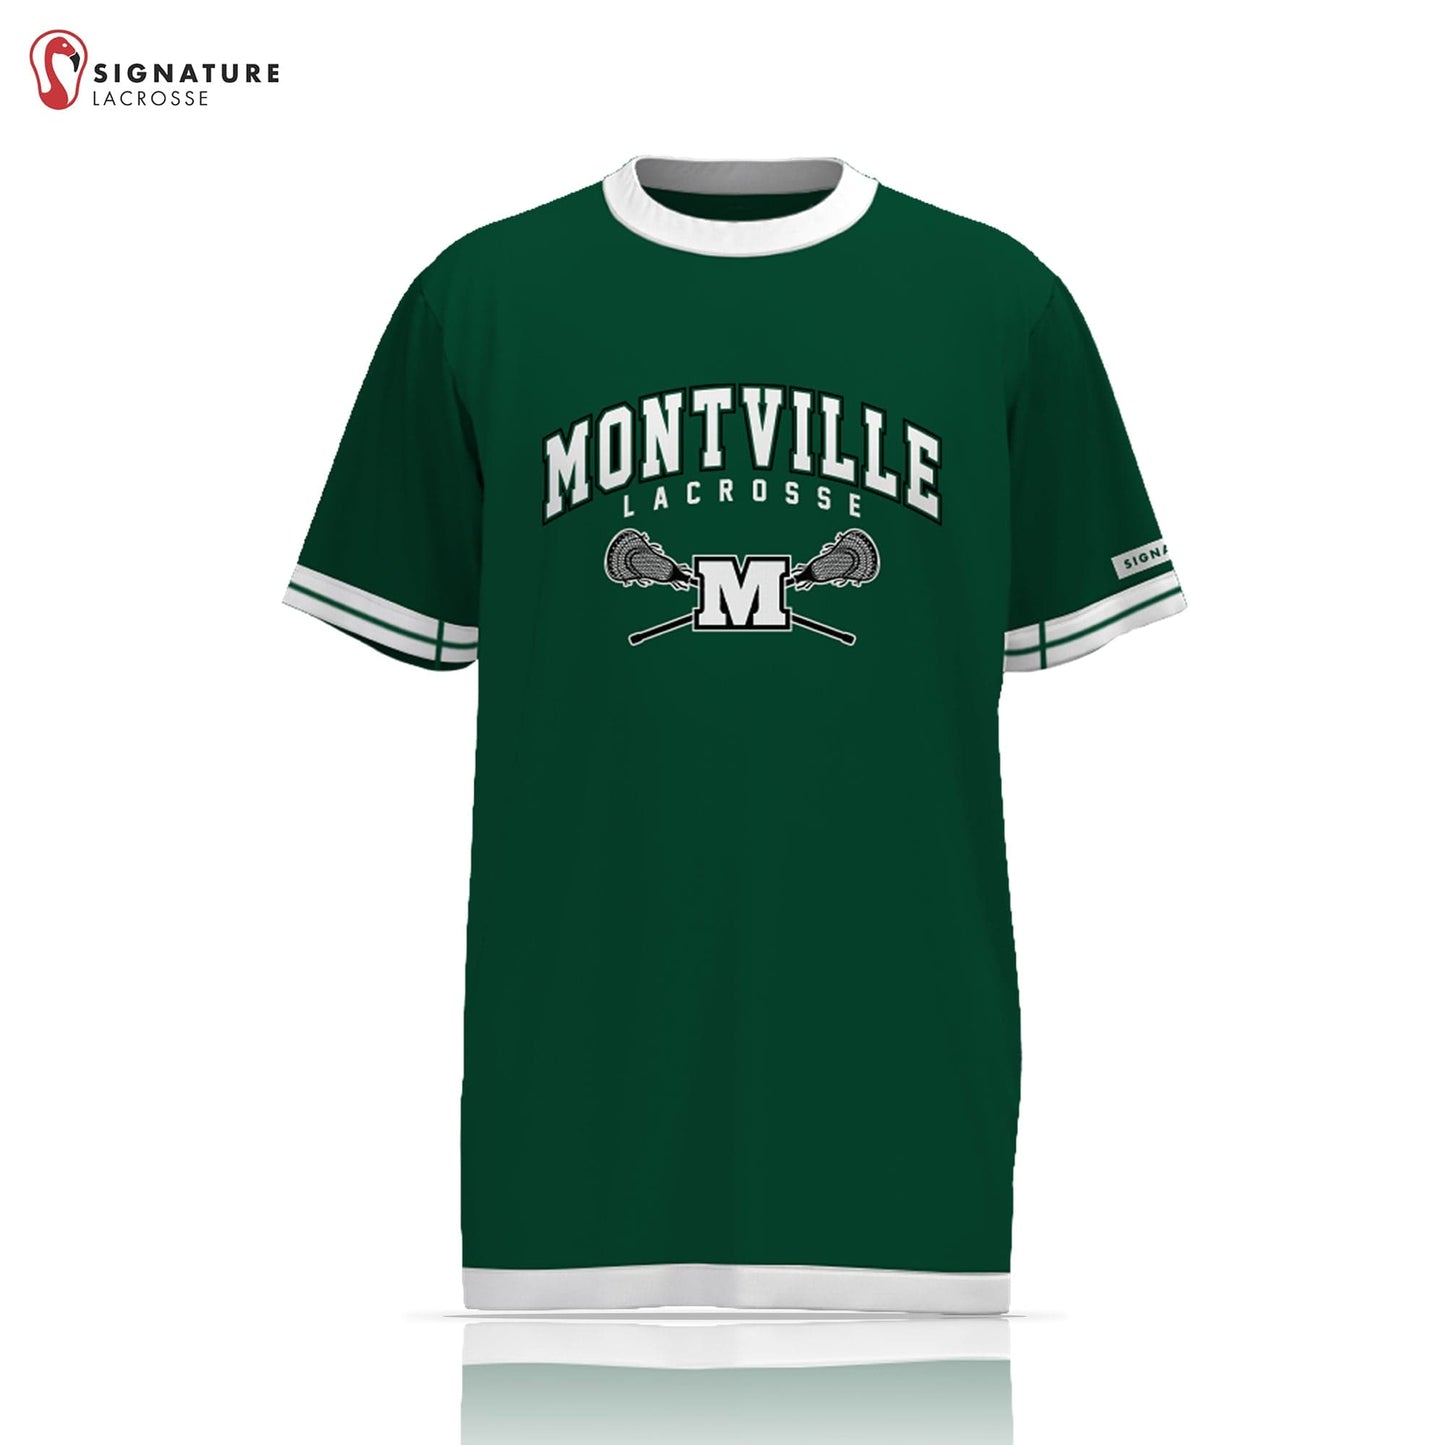 Montville Lacrosse Men's Game Short Sleeve Shooter Shirt: Montville Lacrosse Signature Lacrosse